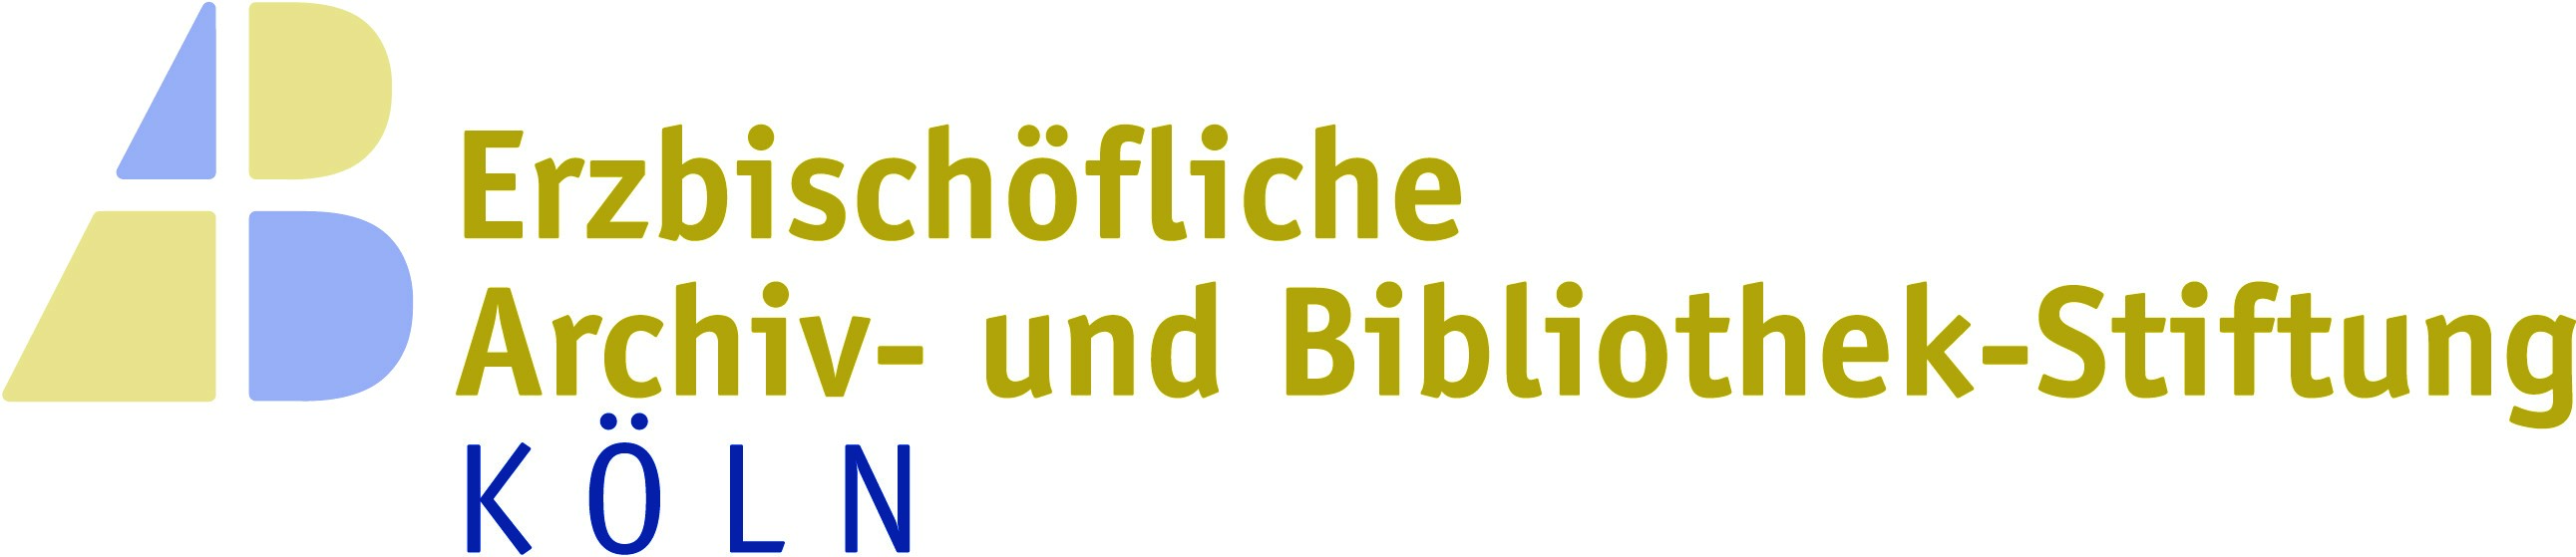 Logo Archiv-Bibliotheksstiftung